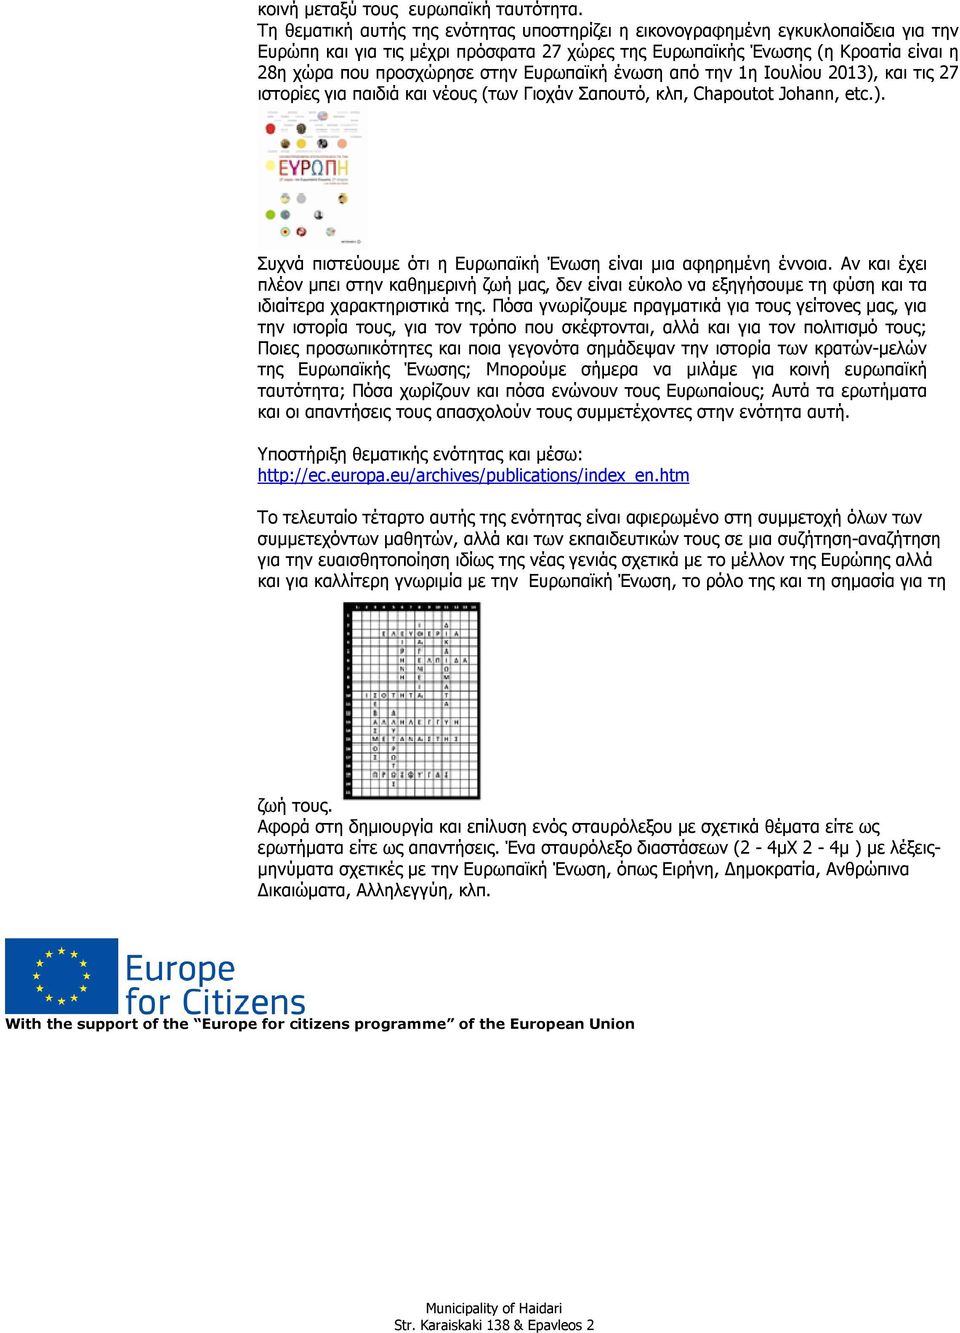 Ευρωπαϊκή ένωση από την 1η Ιουλίου 2013), και τις 27 ιστορίες για παιδιά και νέους (των Γιοχάν Σαπουτό, κλπ, Chapoutot Johann, etc.). Συχνά πιστεύουμε ότι η Ευρωπαϊκή Ένωση είναι μια αφηρημένη έννοια.